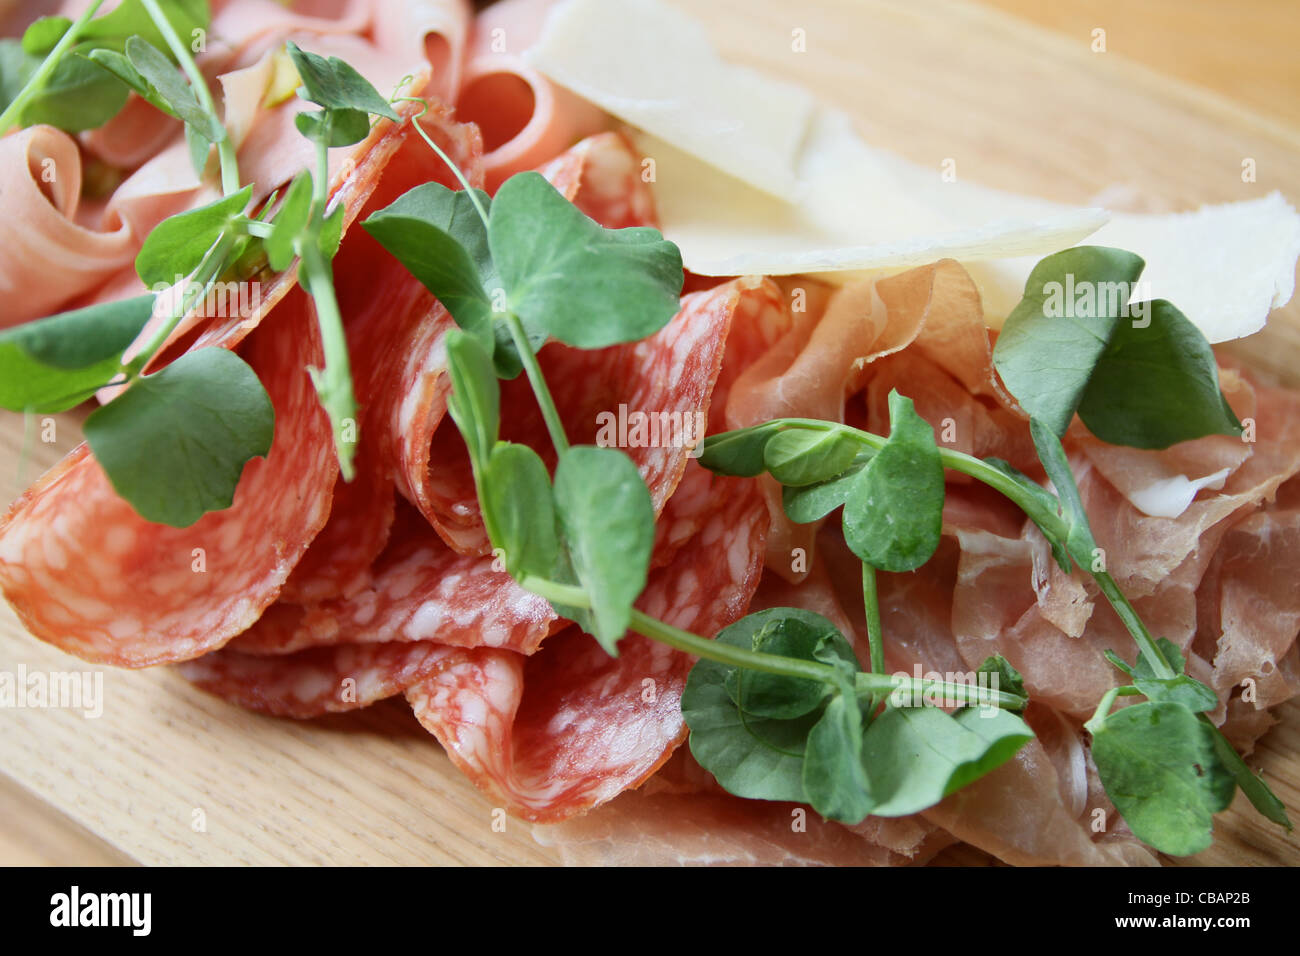 Salami-Parma-Schinken-Platte mit Erbsensprossen auf einem hölzernen Teller serviert Stockfoto